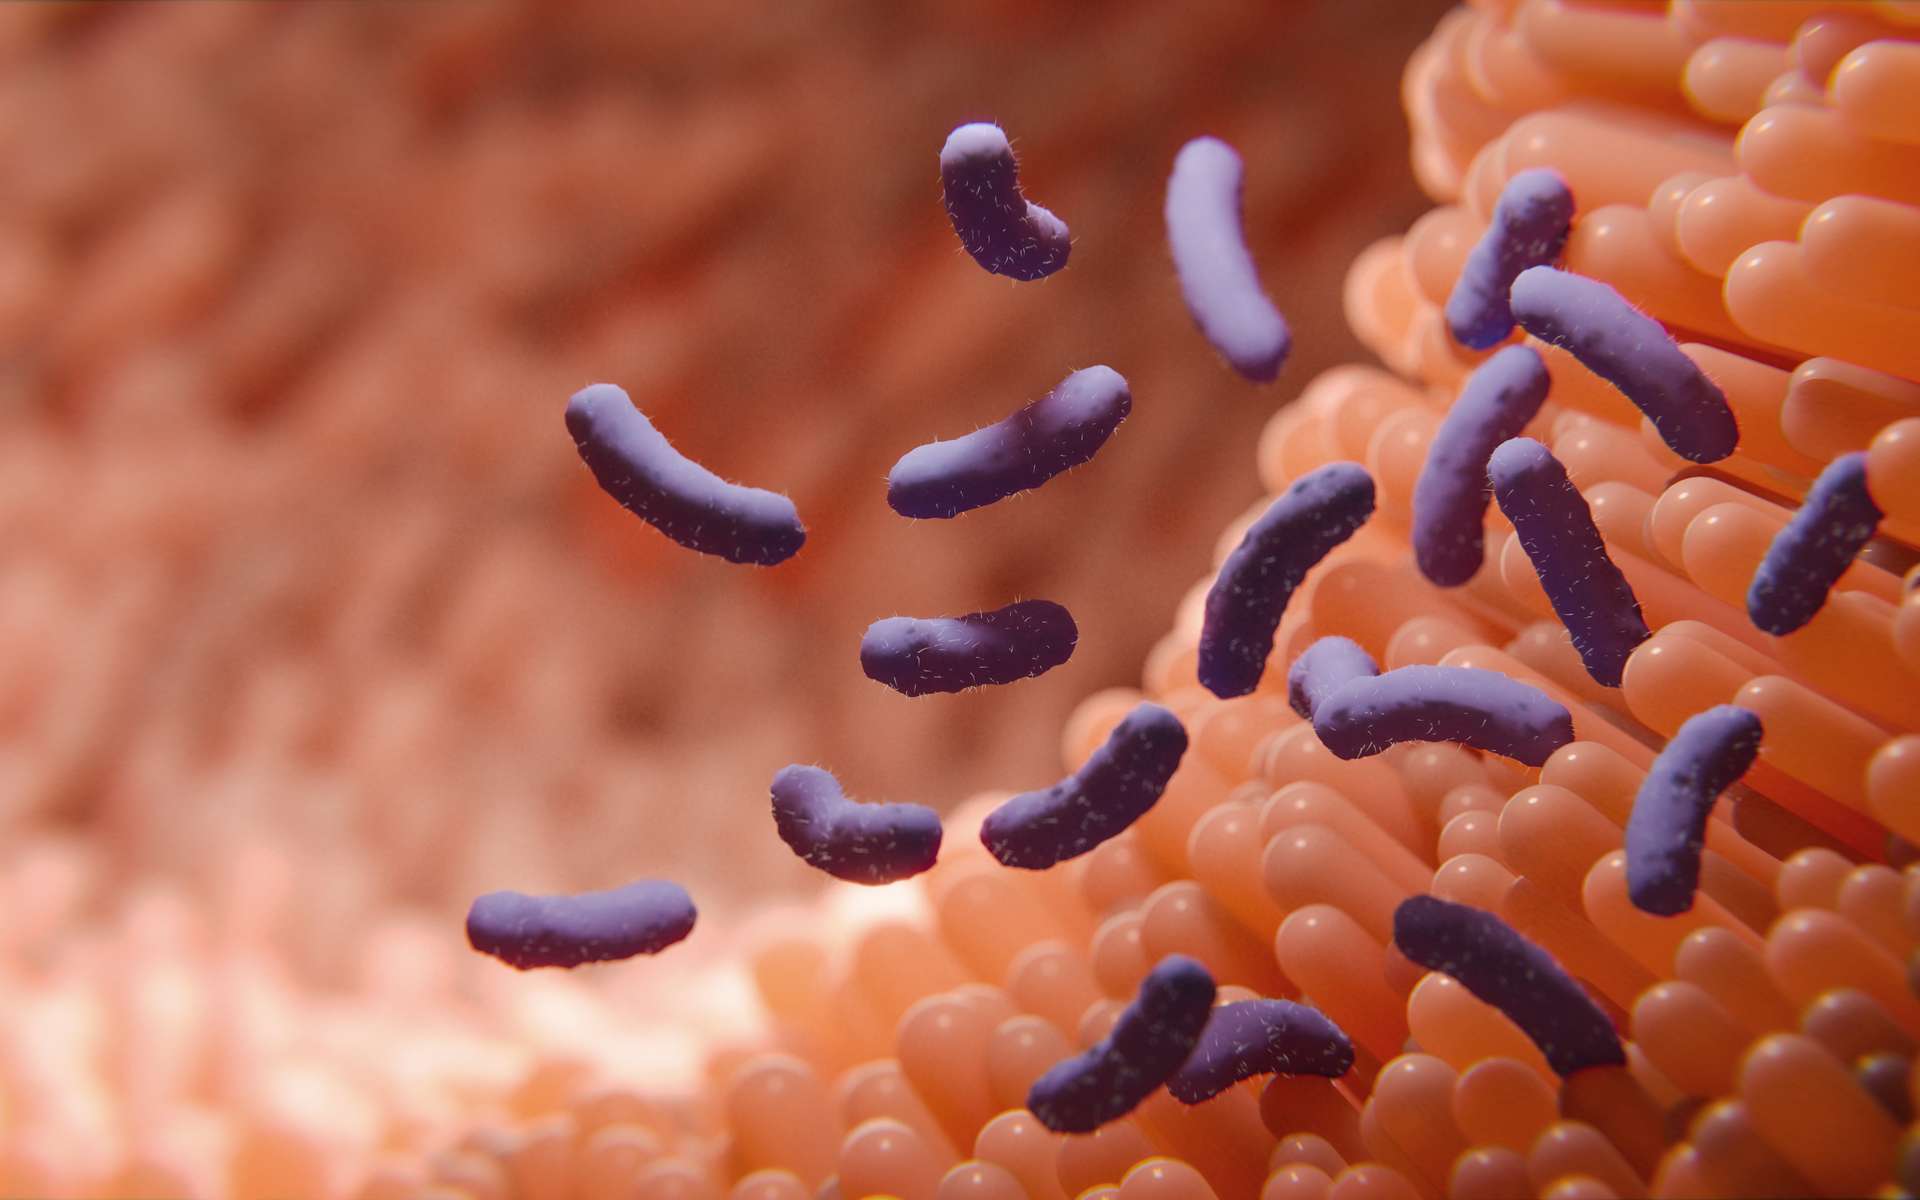 Le microbiote intestinal fait l'objet de nombreuses recherches scientifiques ces dernières années. © merklicht.de, Adobe Stock